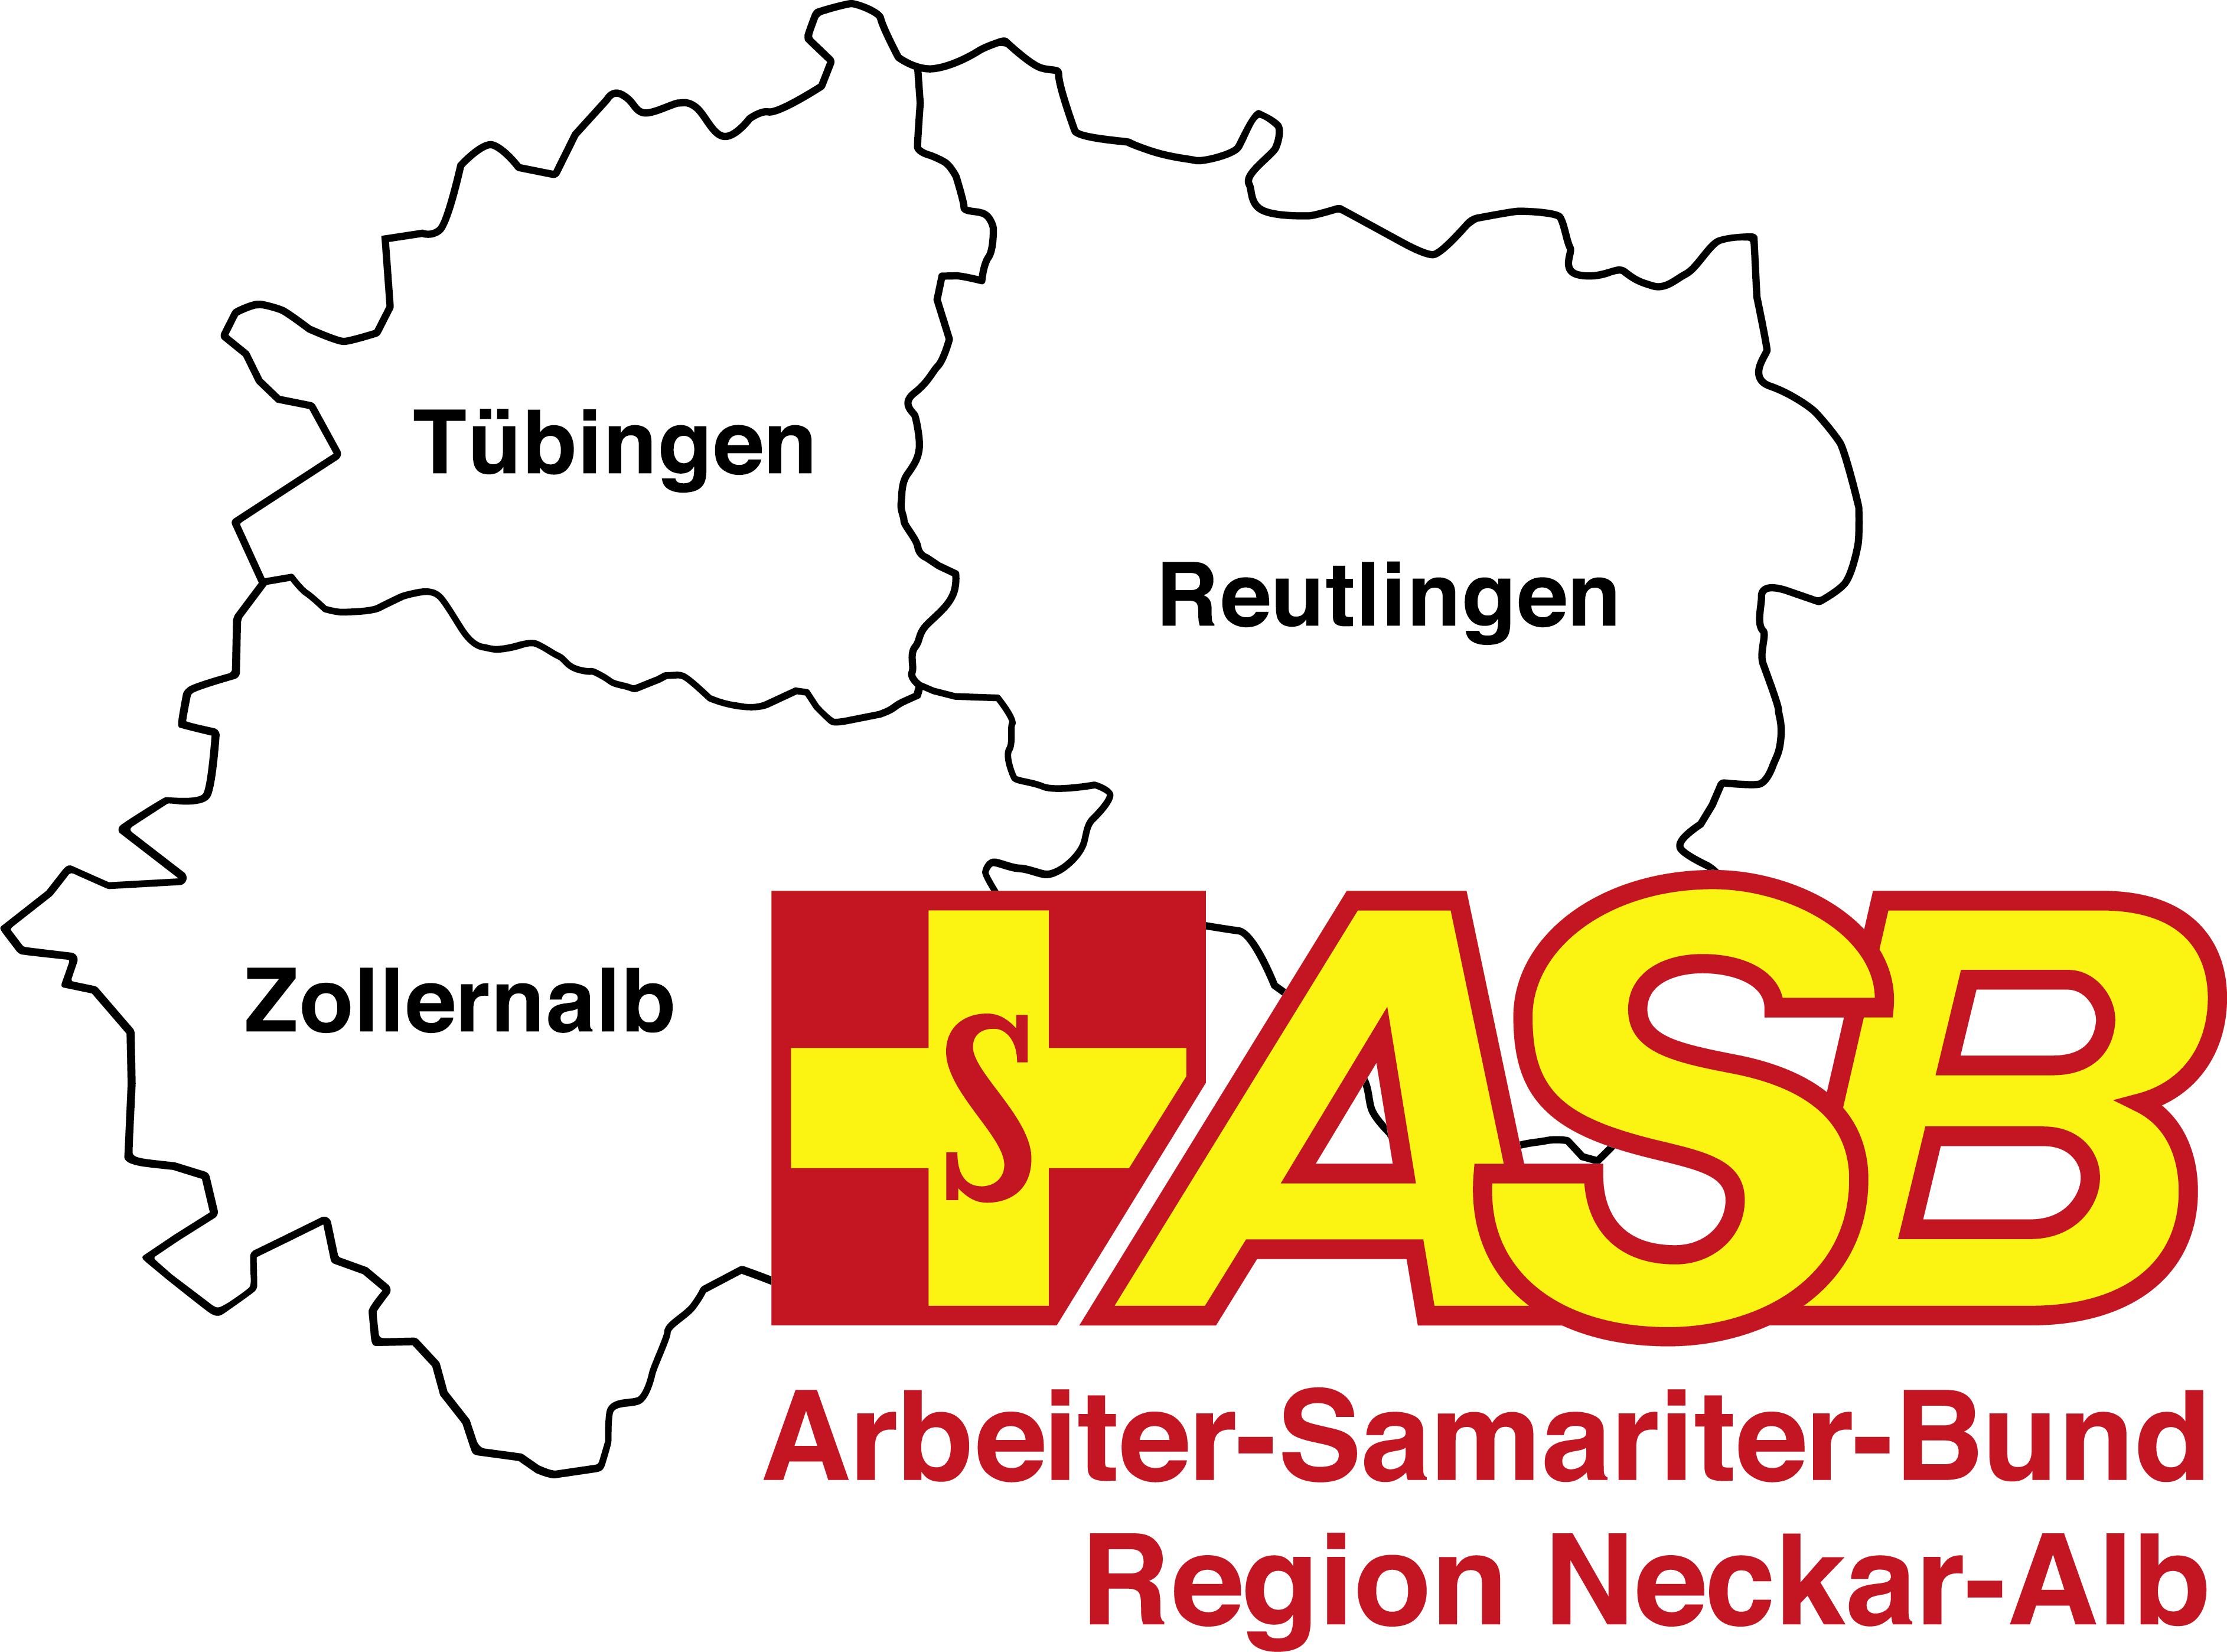 ASB_Region_Neckar-Alb_V2.png